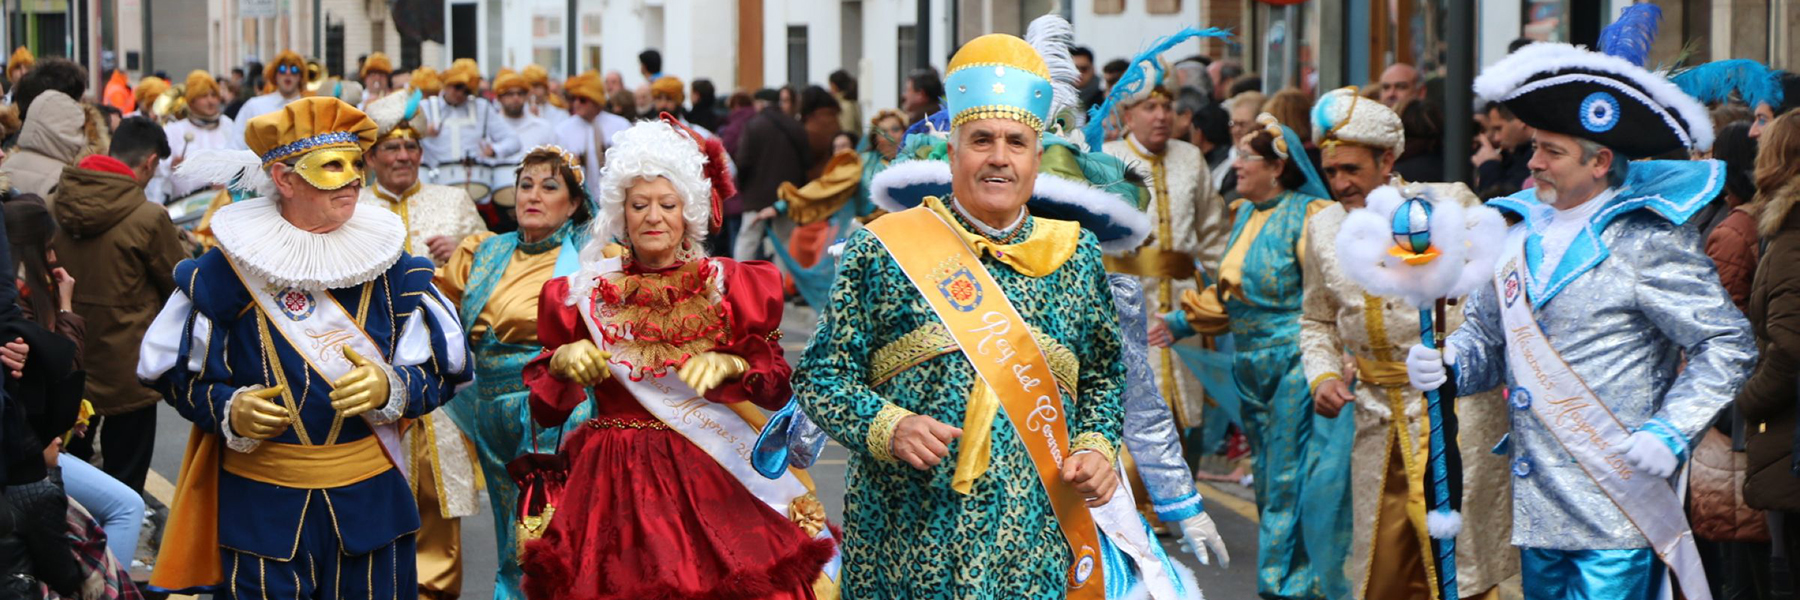 carnaval-miguelturra-domingo-pinata-2016